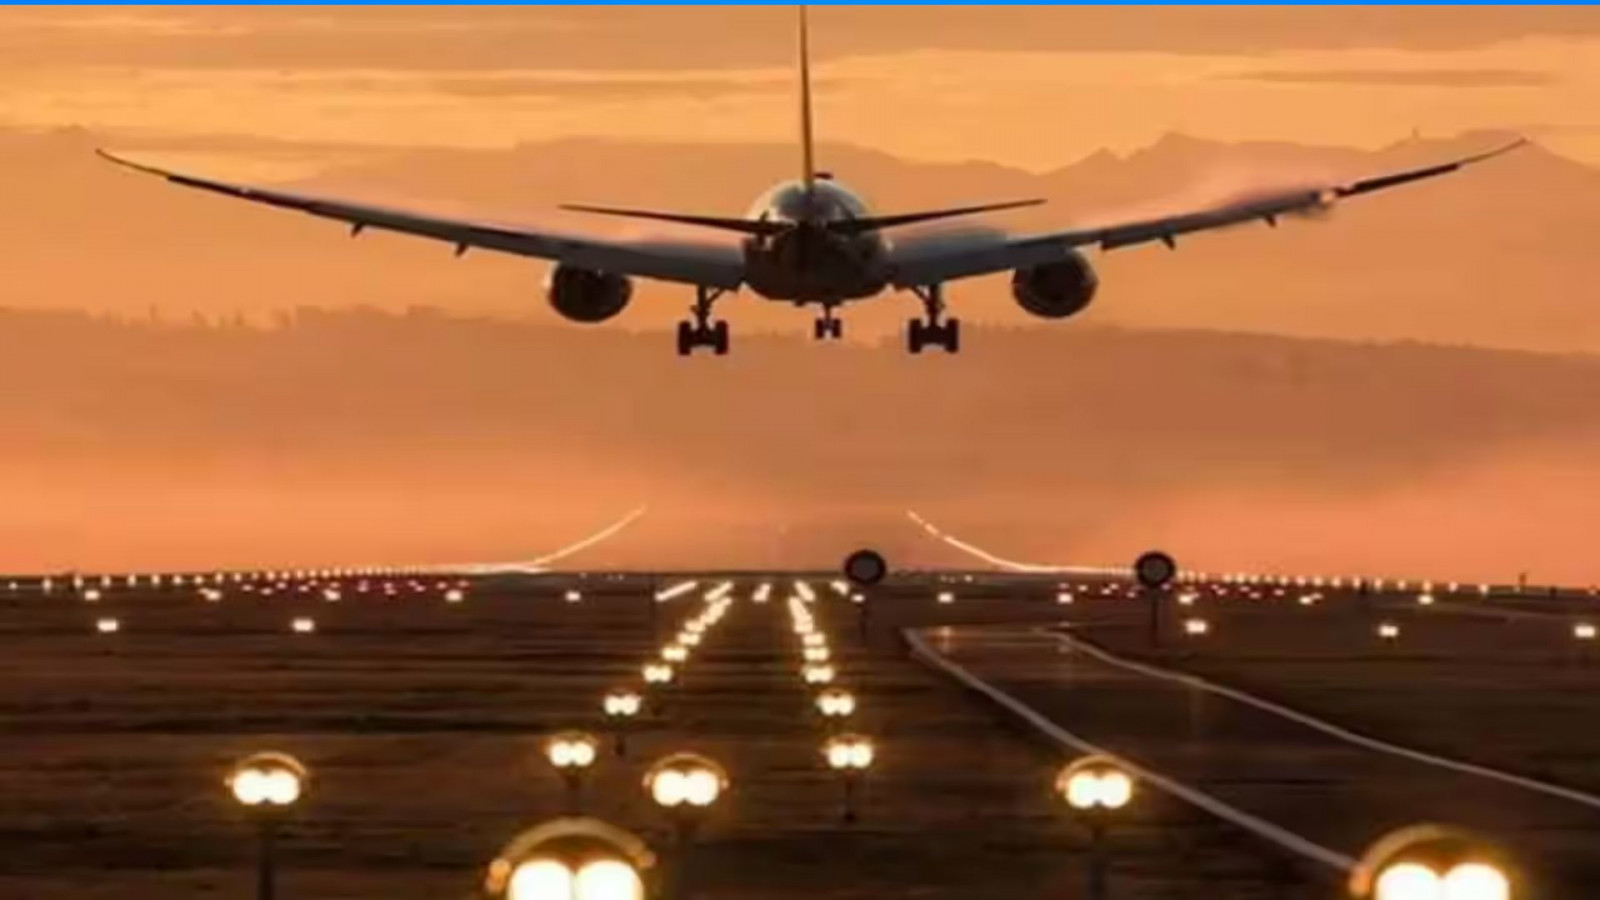 बरेली: लखनऊ और अयोध्या समेत कई नई उड़ानों के लिए कंपनियों से बातचीत, फरवरी में एयर ट्रैफिक का सर्वे करने का संकेत